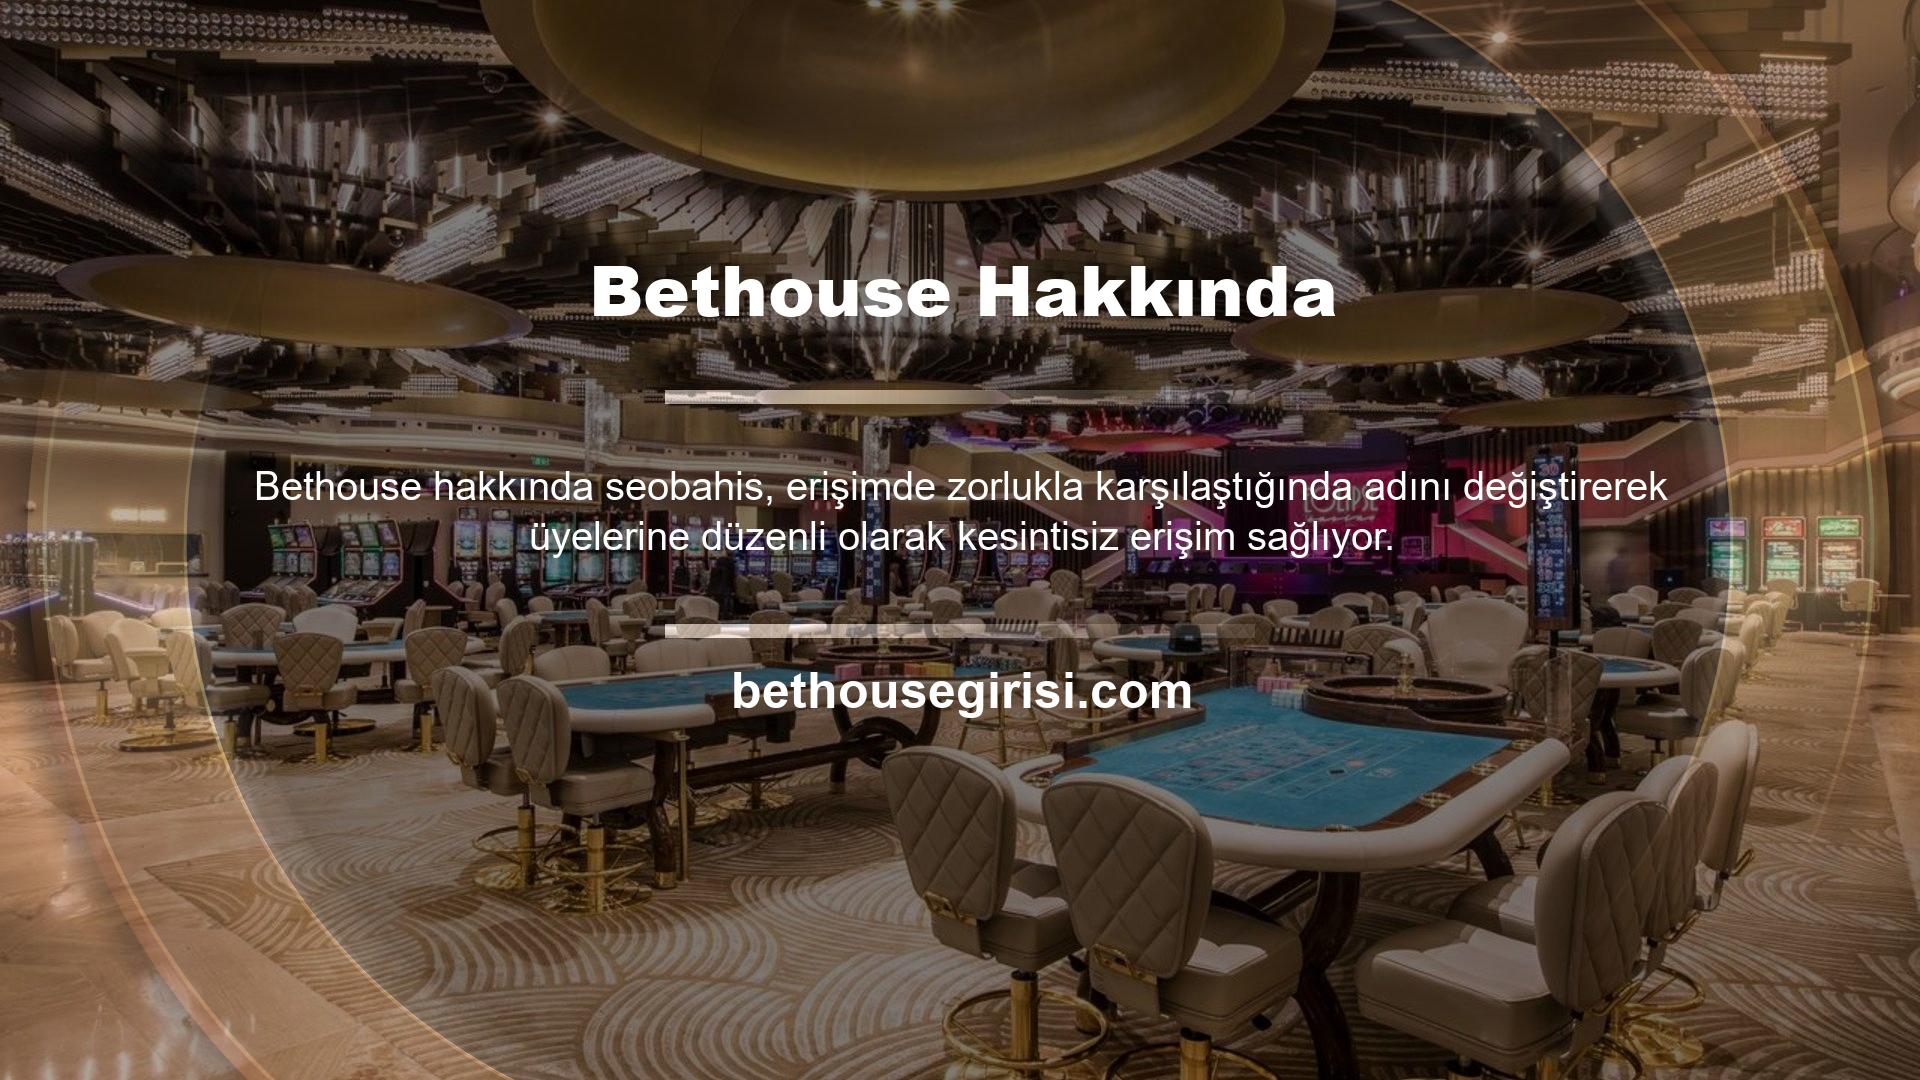 Web sitemizde en son Bethouse giriş bilgilerine ve için güncellenmiş kayıt detaylarına ulaşabilirsiniz 7/24 hizmetiyle Bethouse, bahis, casino ve pokerle ilgilenenler için popüler bir seçimdir